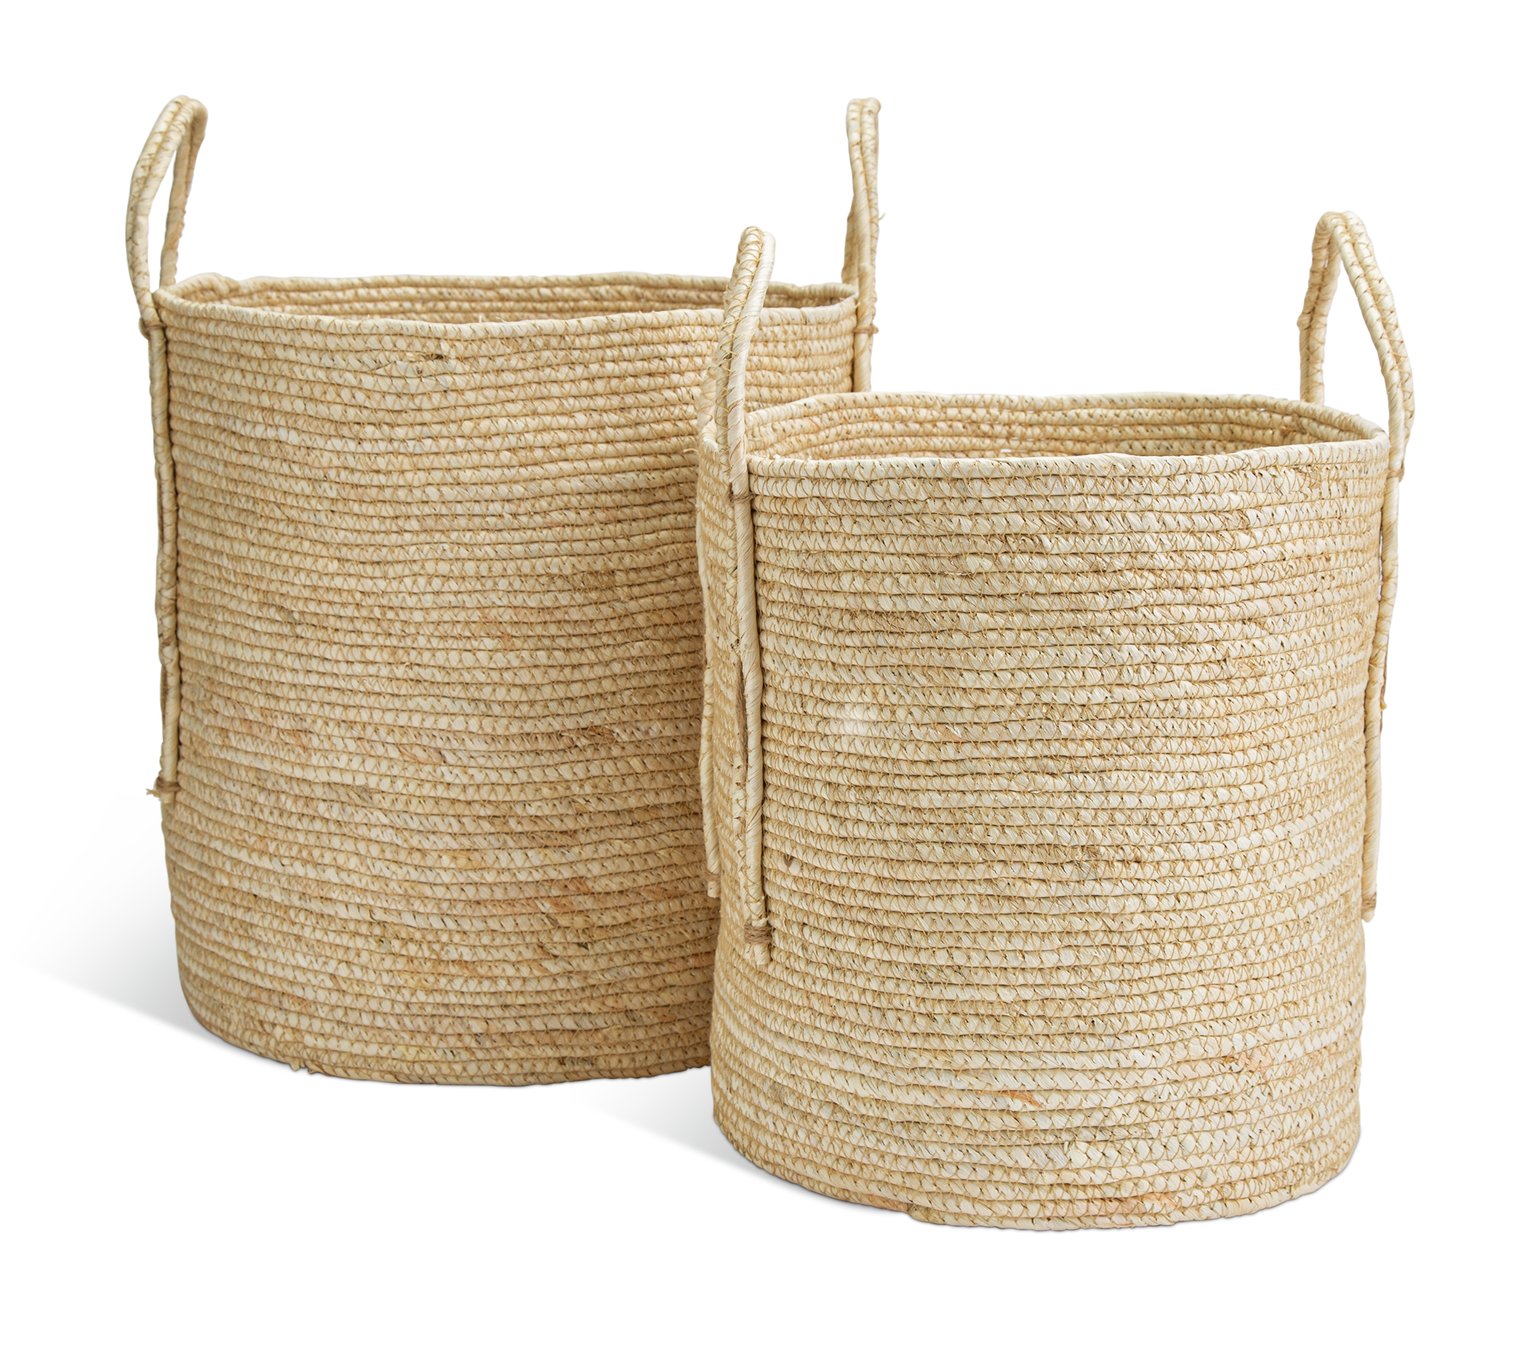 Habitat Corn Husk Storage Baskets - Set of 2 - Natural